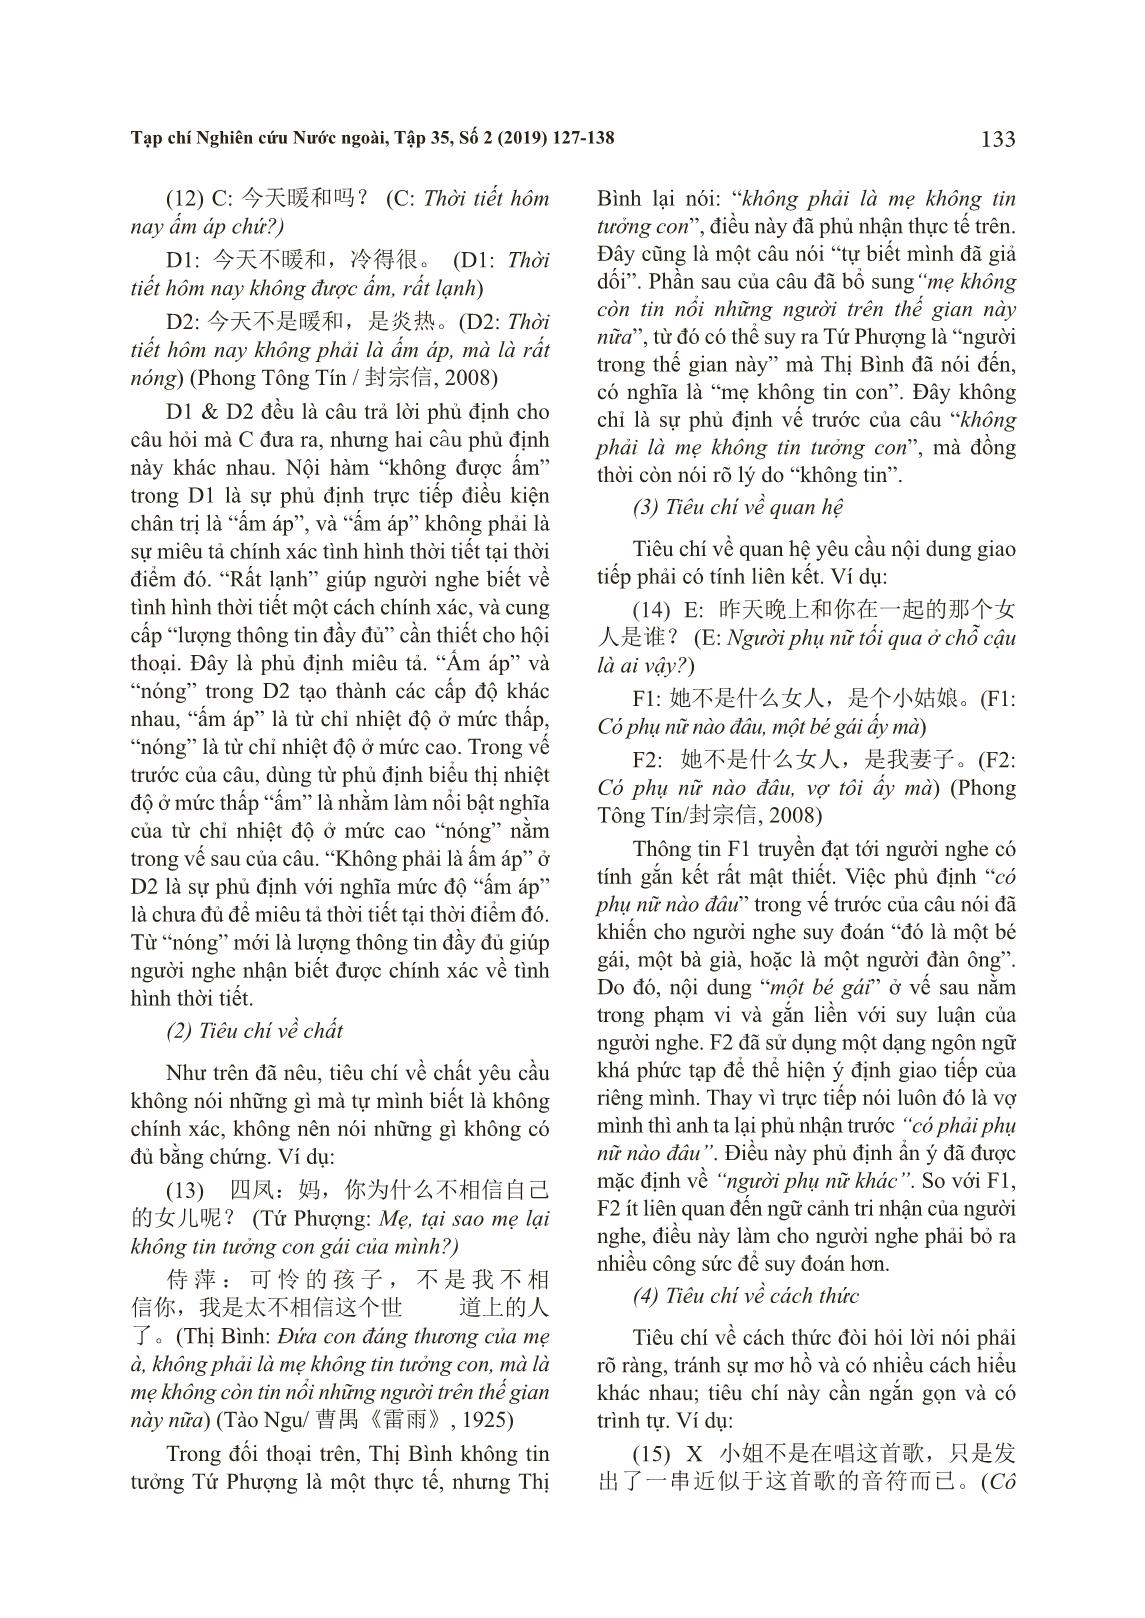 Bàn về phương thức phủ định dụng học trong tiếng Hán và tiếng Việt trang 7